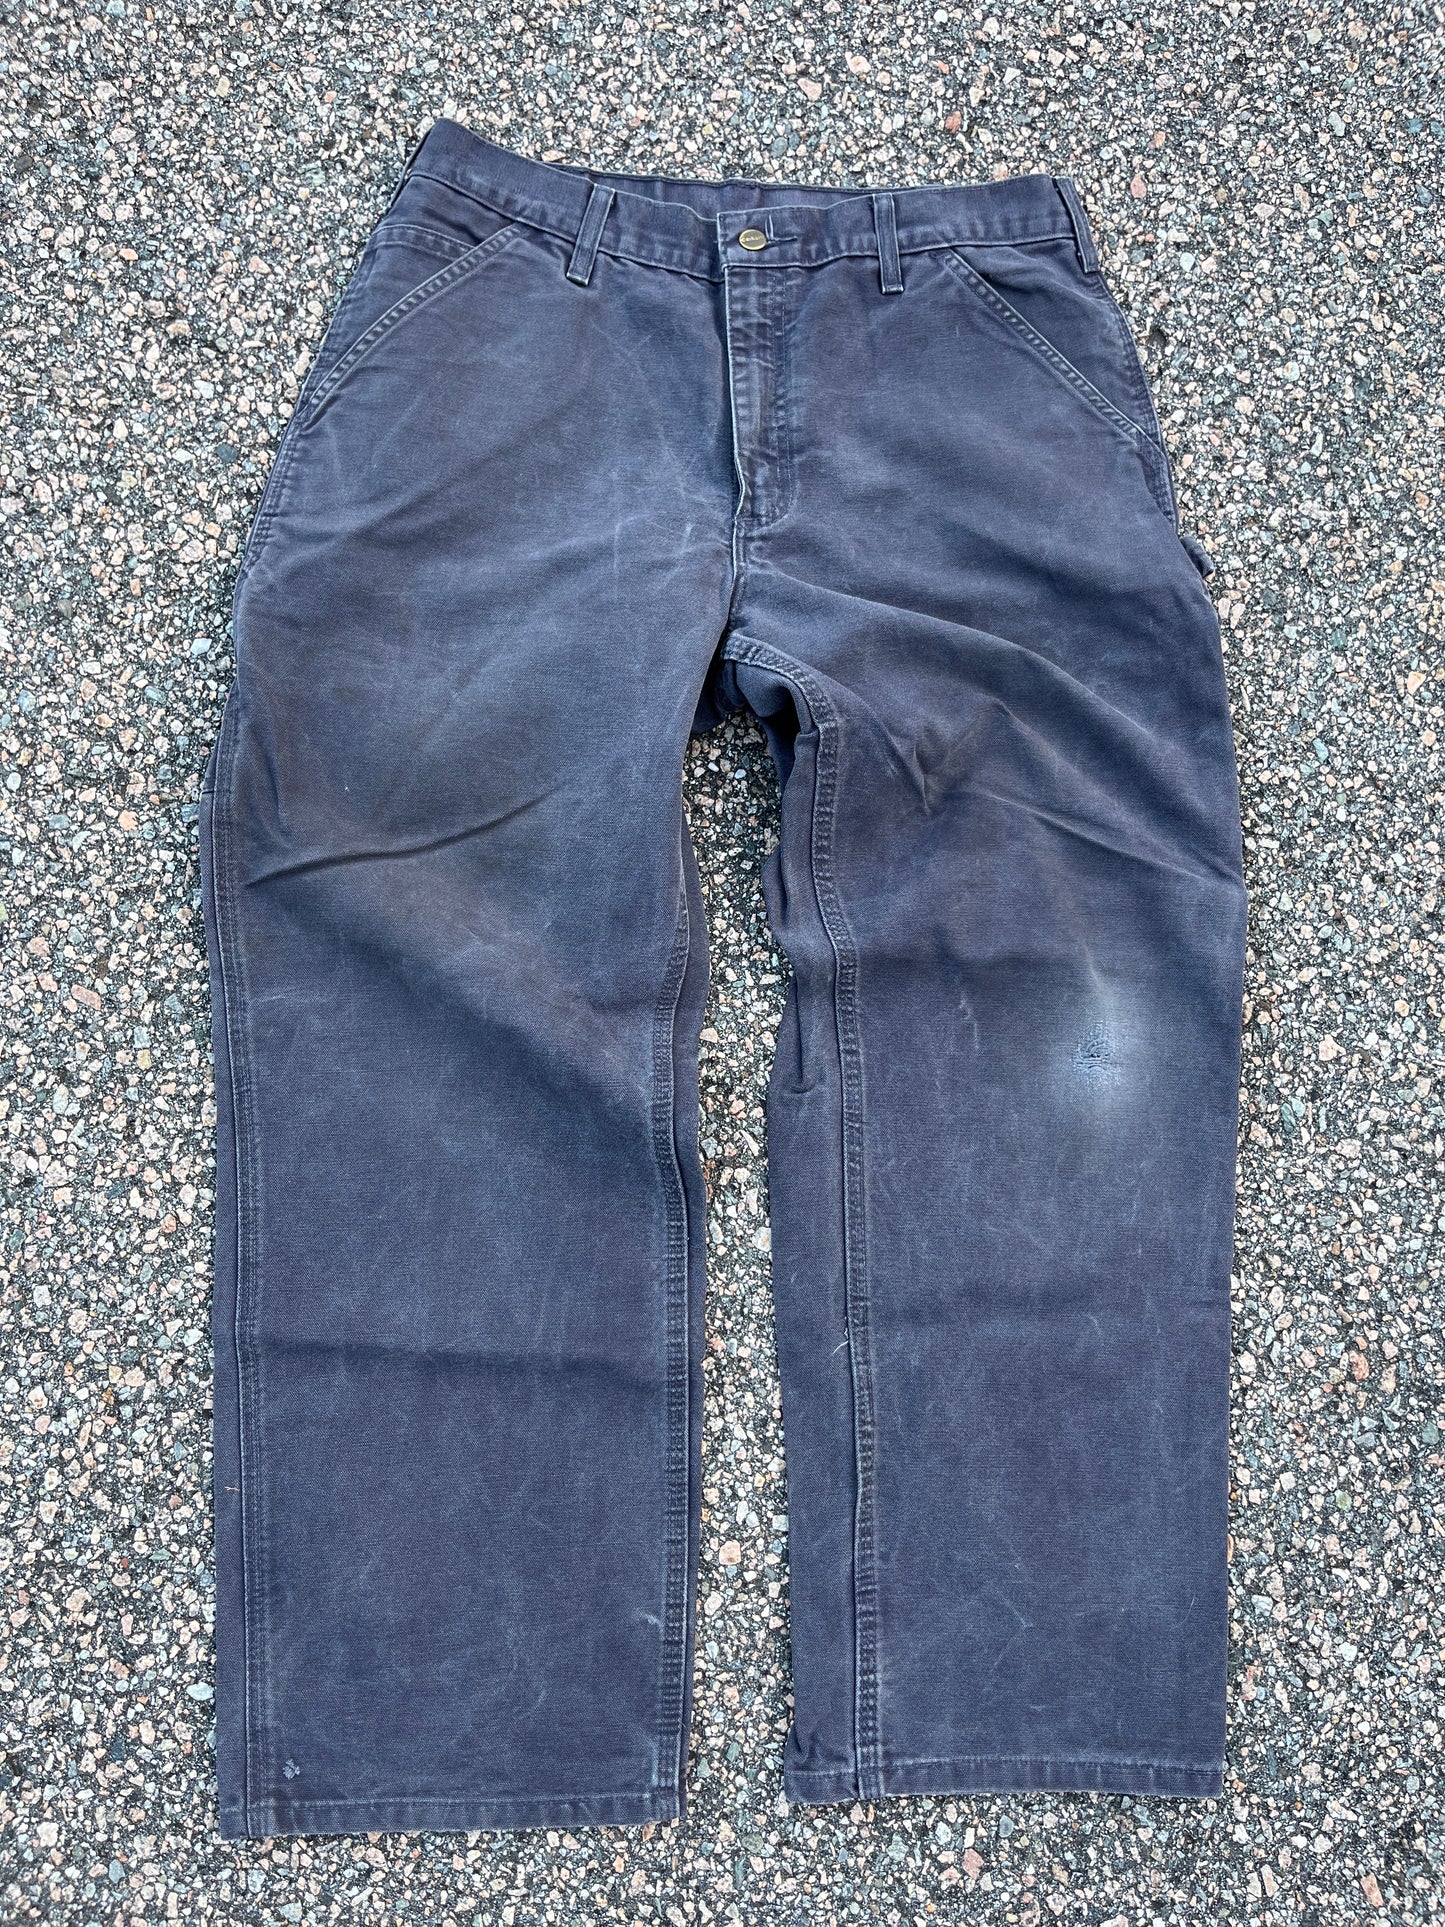 Faded Petrol Blue Carhartt Carpenter Pants - 33 x 29